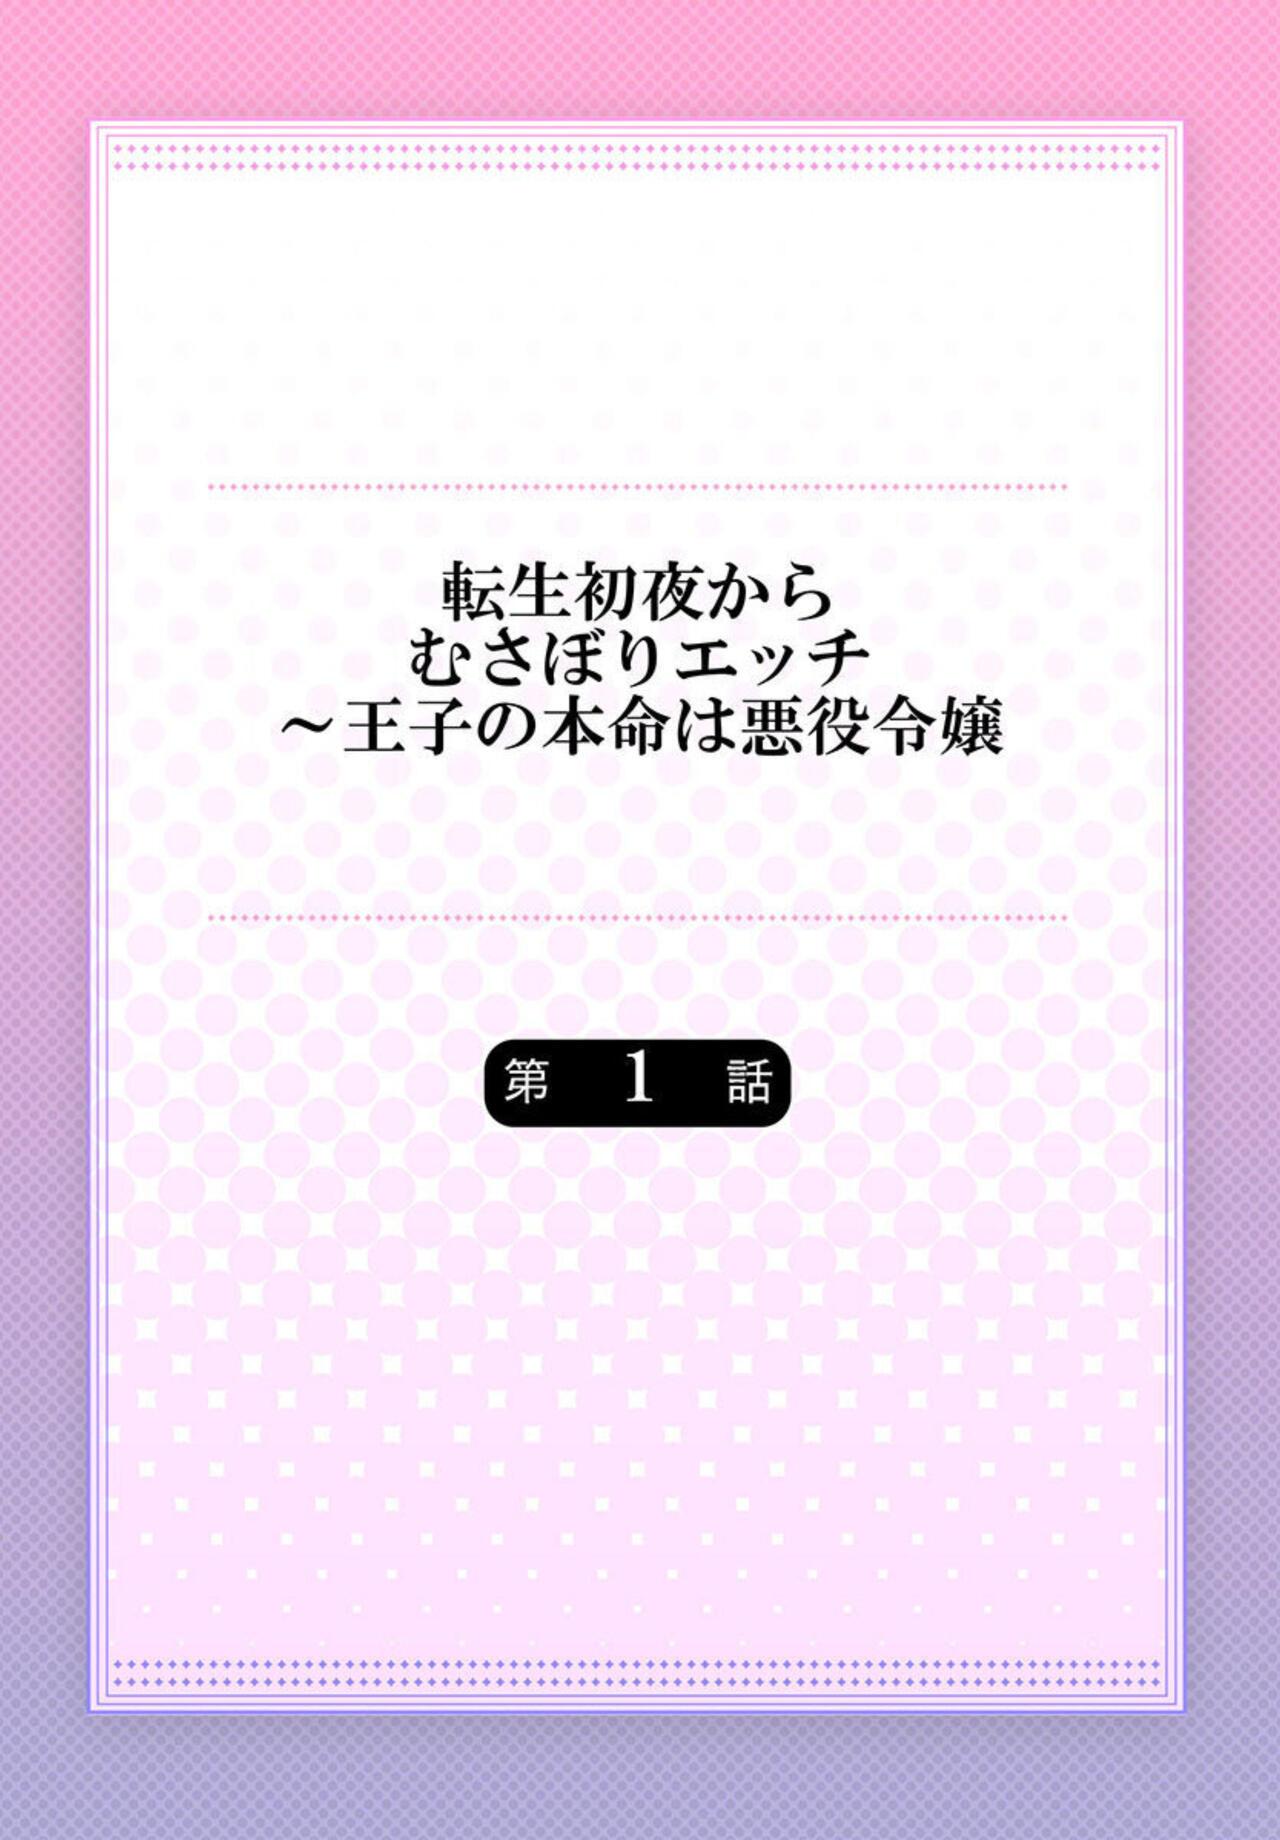 Anal Play Tensei Shoya Kara Musabori Ecchi ~ Oji no Honmei wa Akuyaku Reijou 1 Threeway - Picture 2